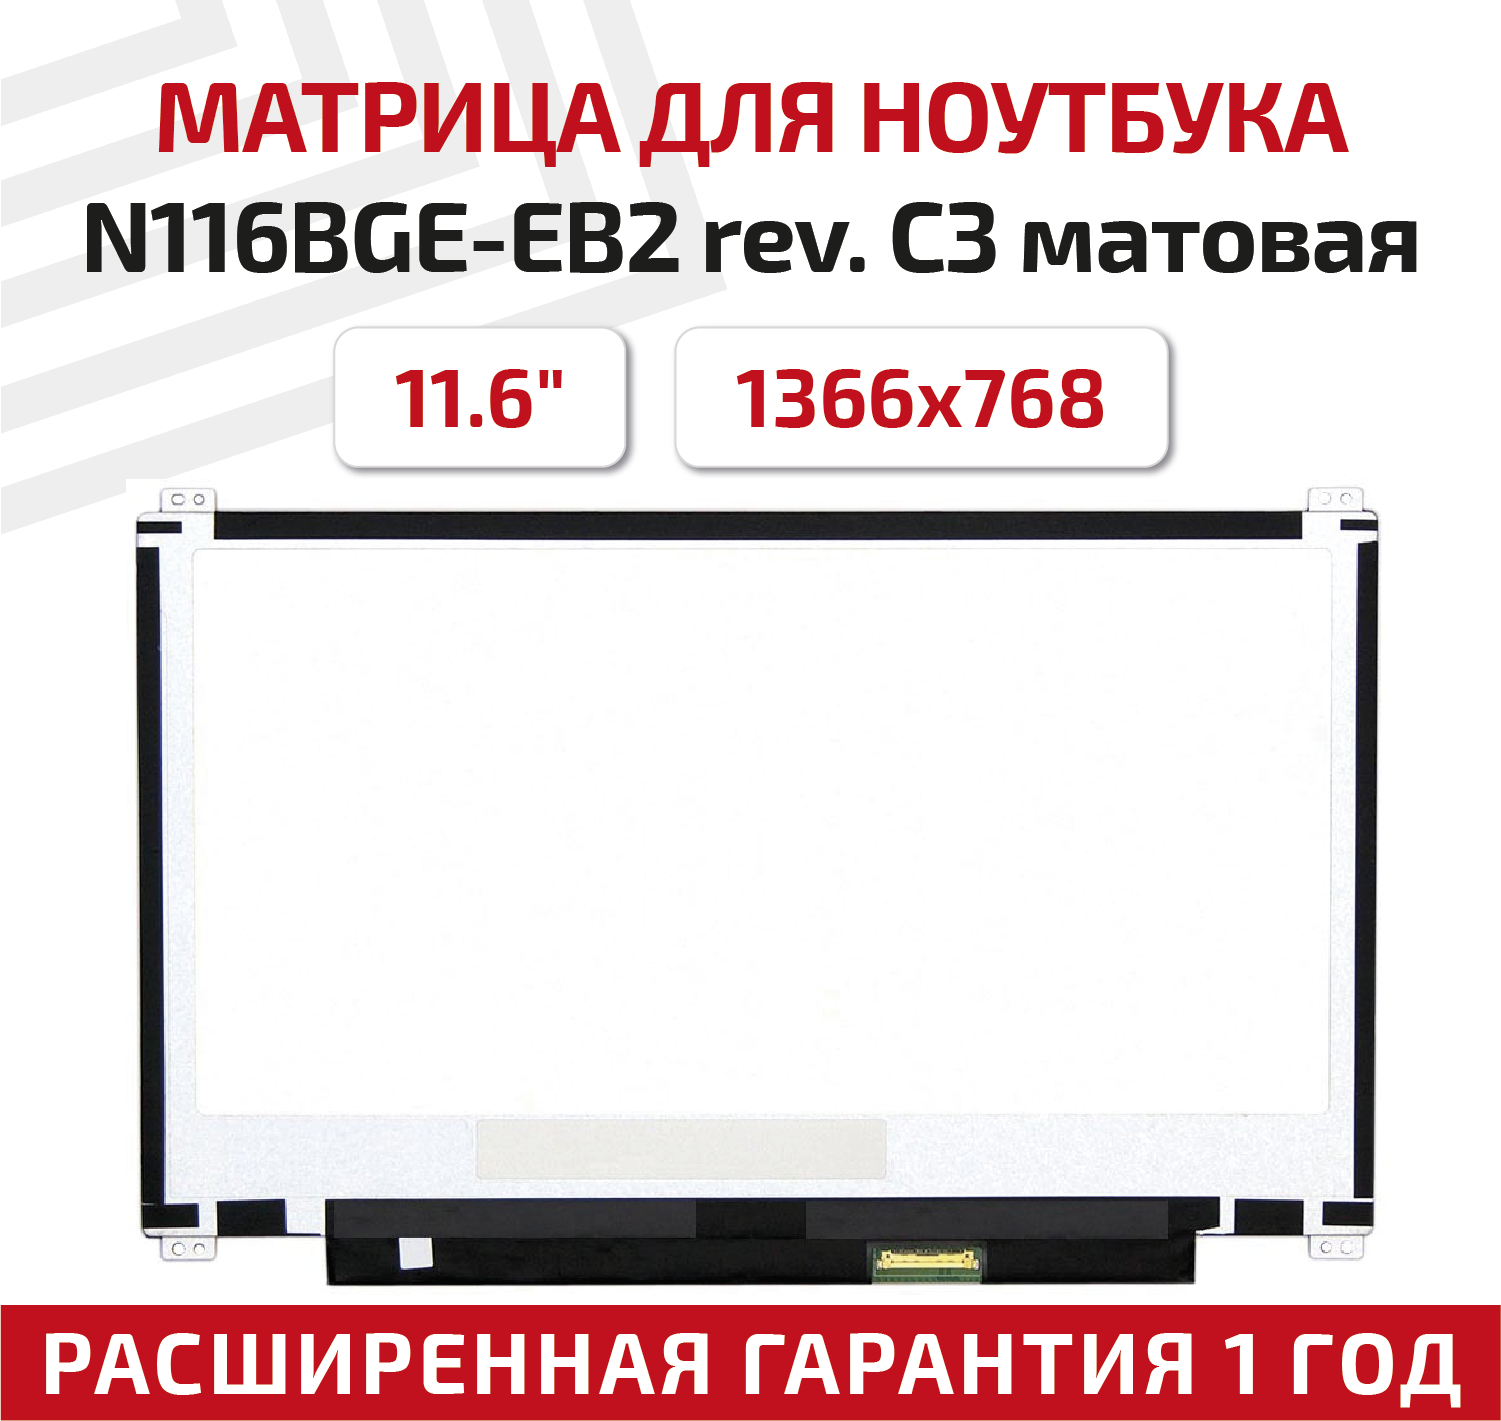 Матрица (экран) для ноутбука N116BGE-EB2 rev. C3, 11.6", 1366x768, Slim (тонкая), 30-pin, светодиодная (LED), матовая